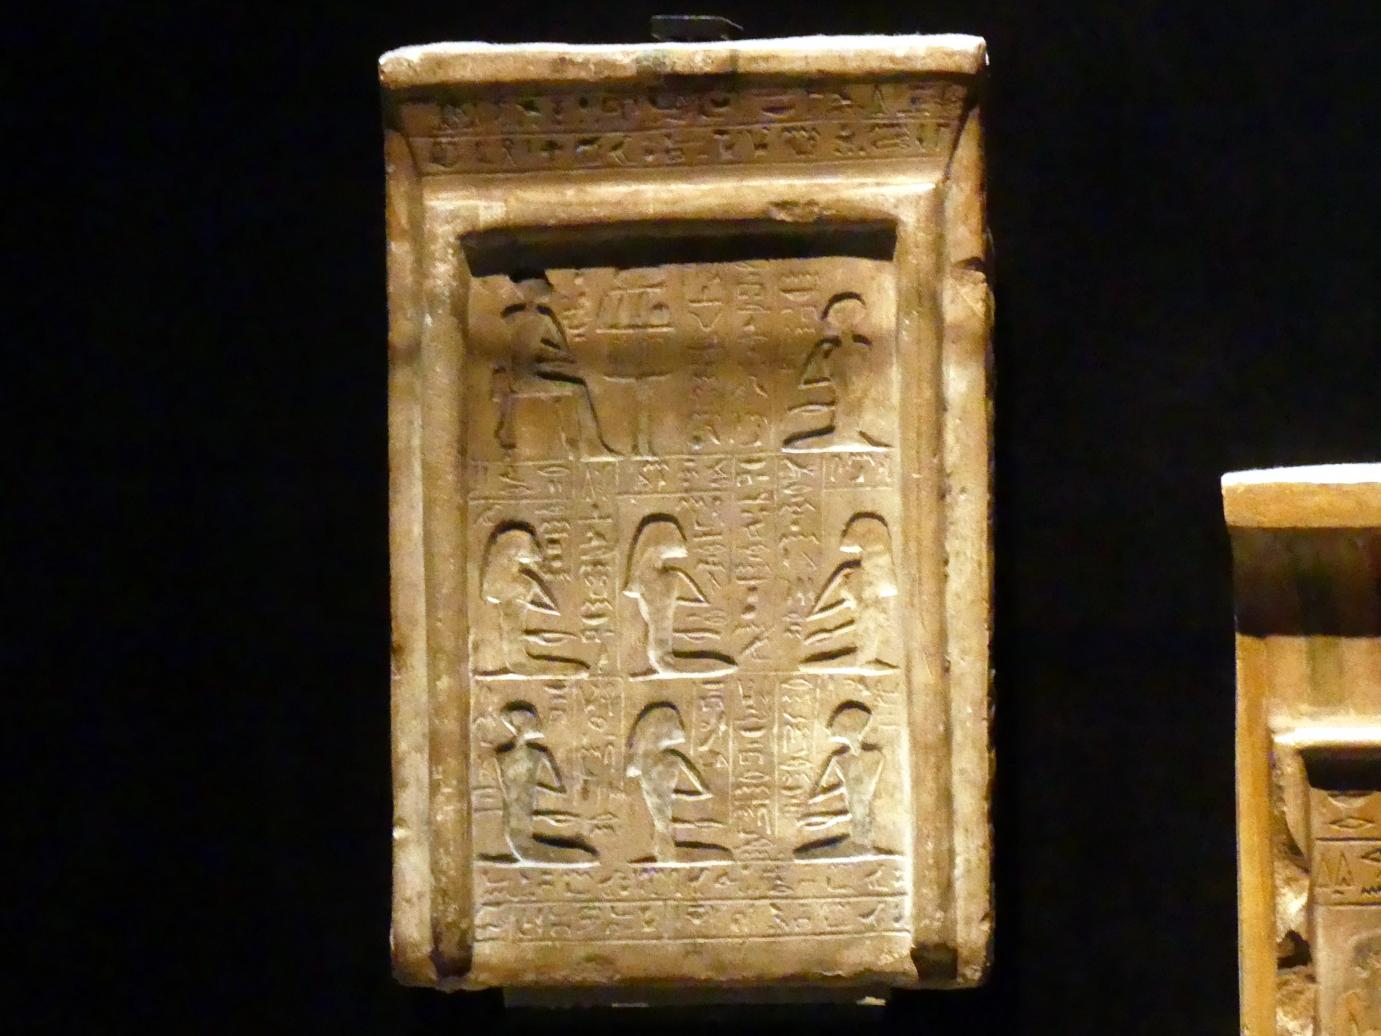 Stele des Obstkellermeisters Iuseneb, 12. Dynastie, 1678 - 1634 v. Chr., 1900 v. Chr., Bild 1/2